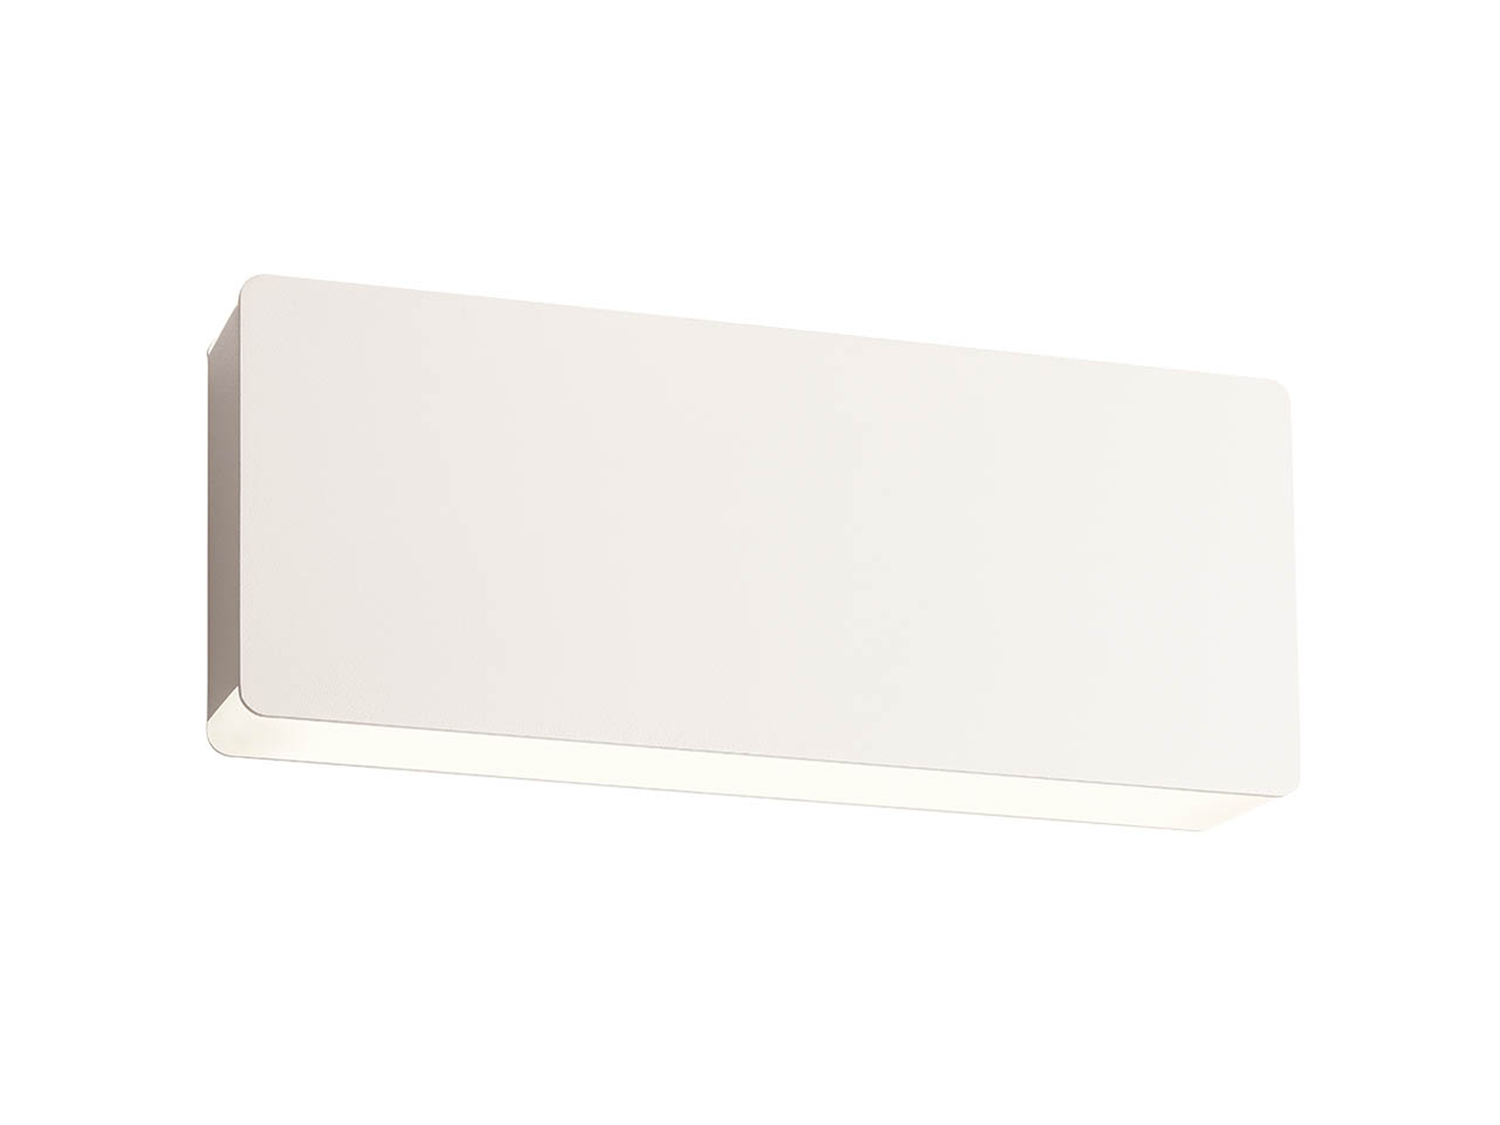 Nástěnné LED svítidlo Tablet pískově bílé, 20W, 3000K, 32cm